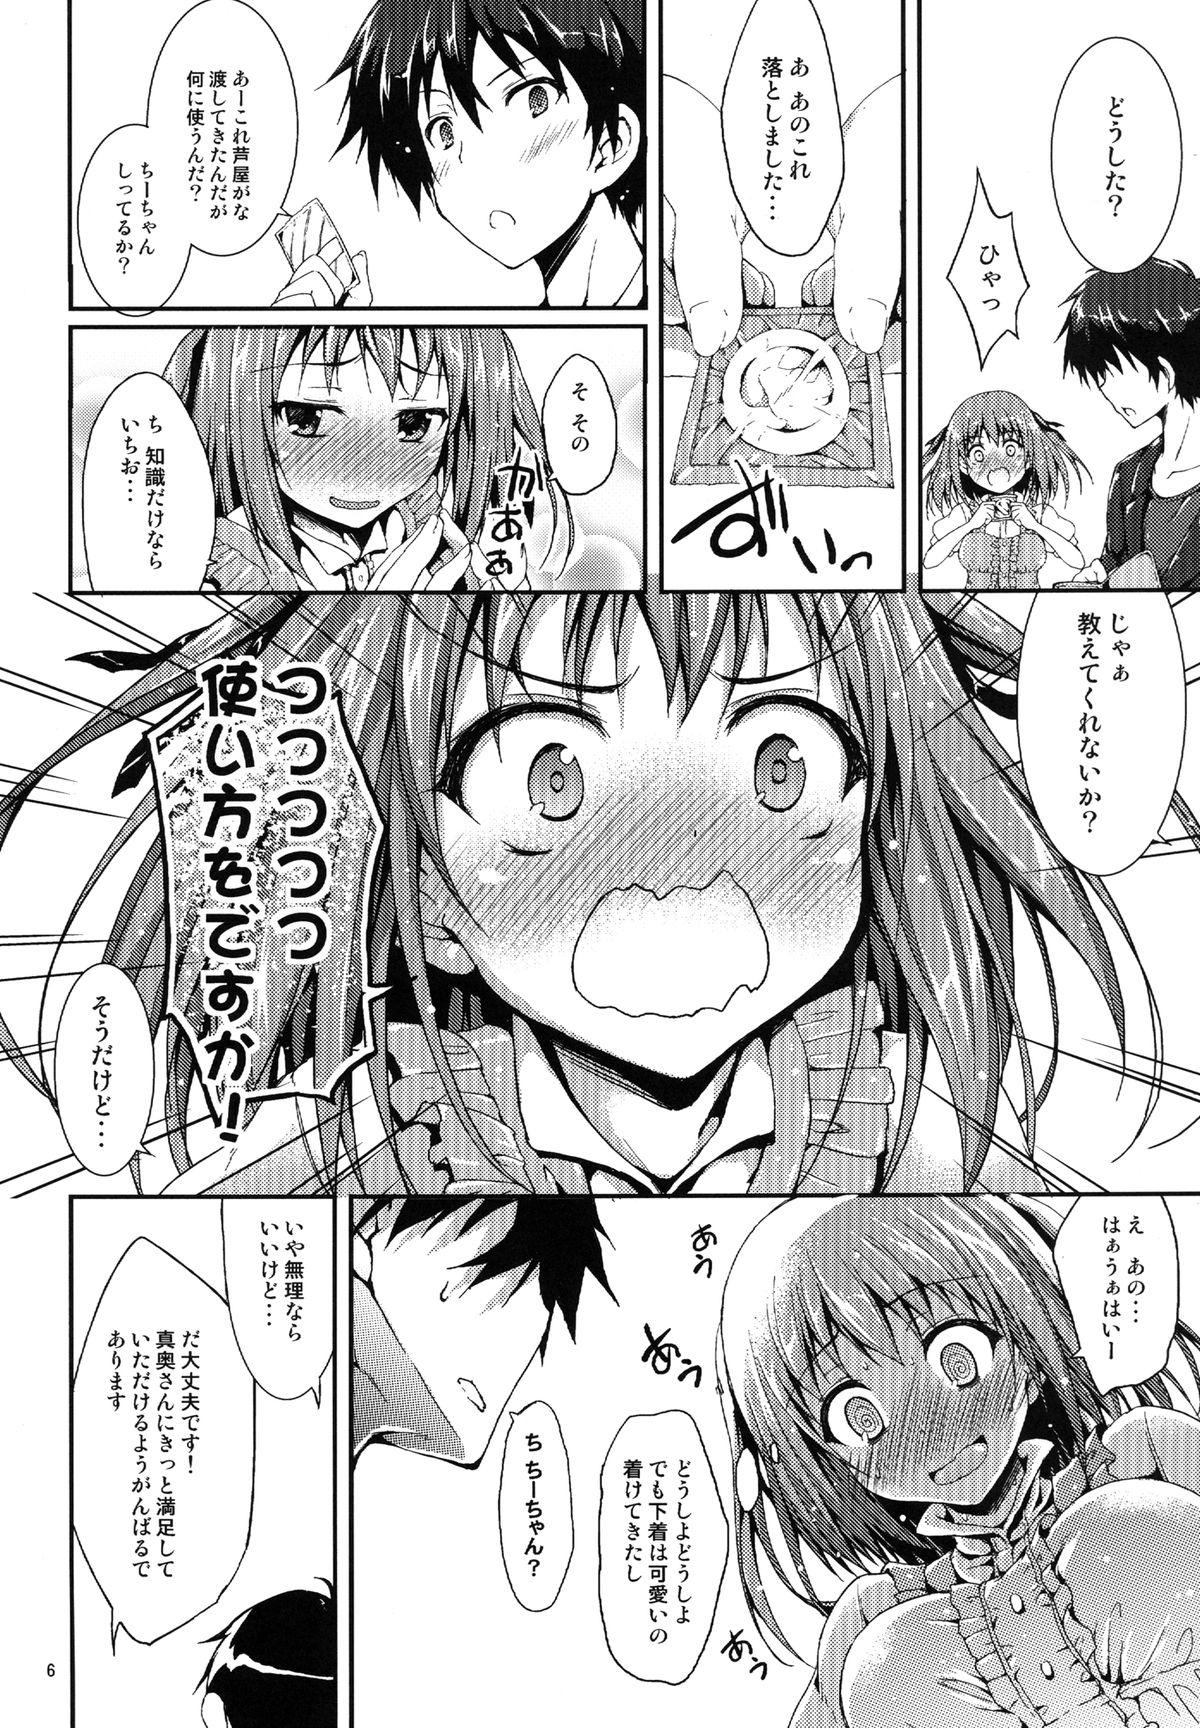 Boobies Koisuru Chi-chan! - Hataraku maou-sama 18yearsold - Page 5